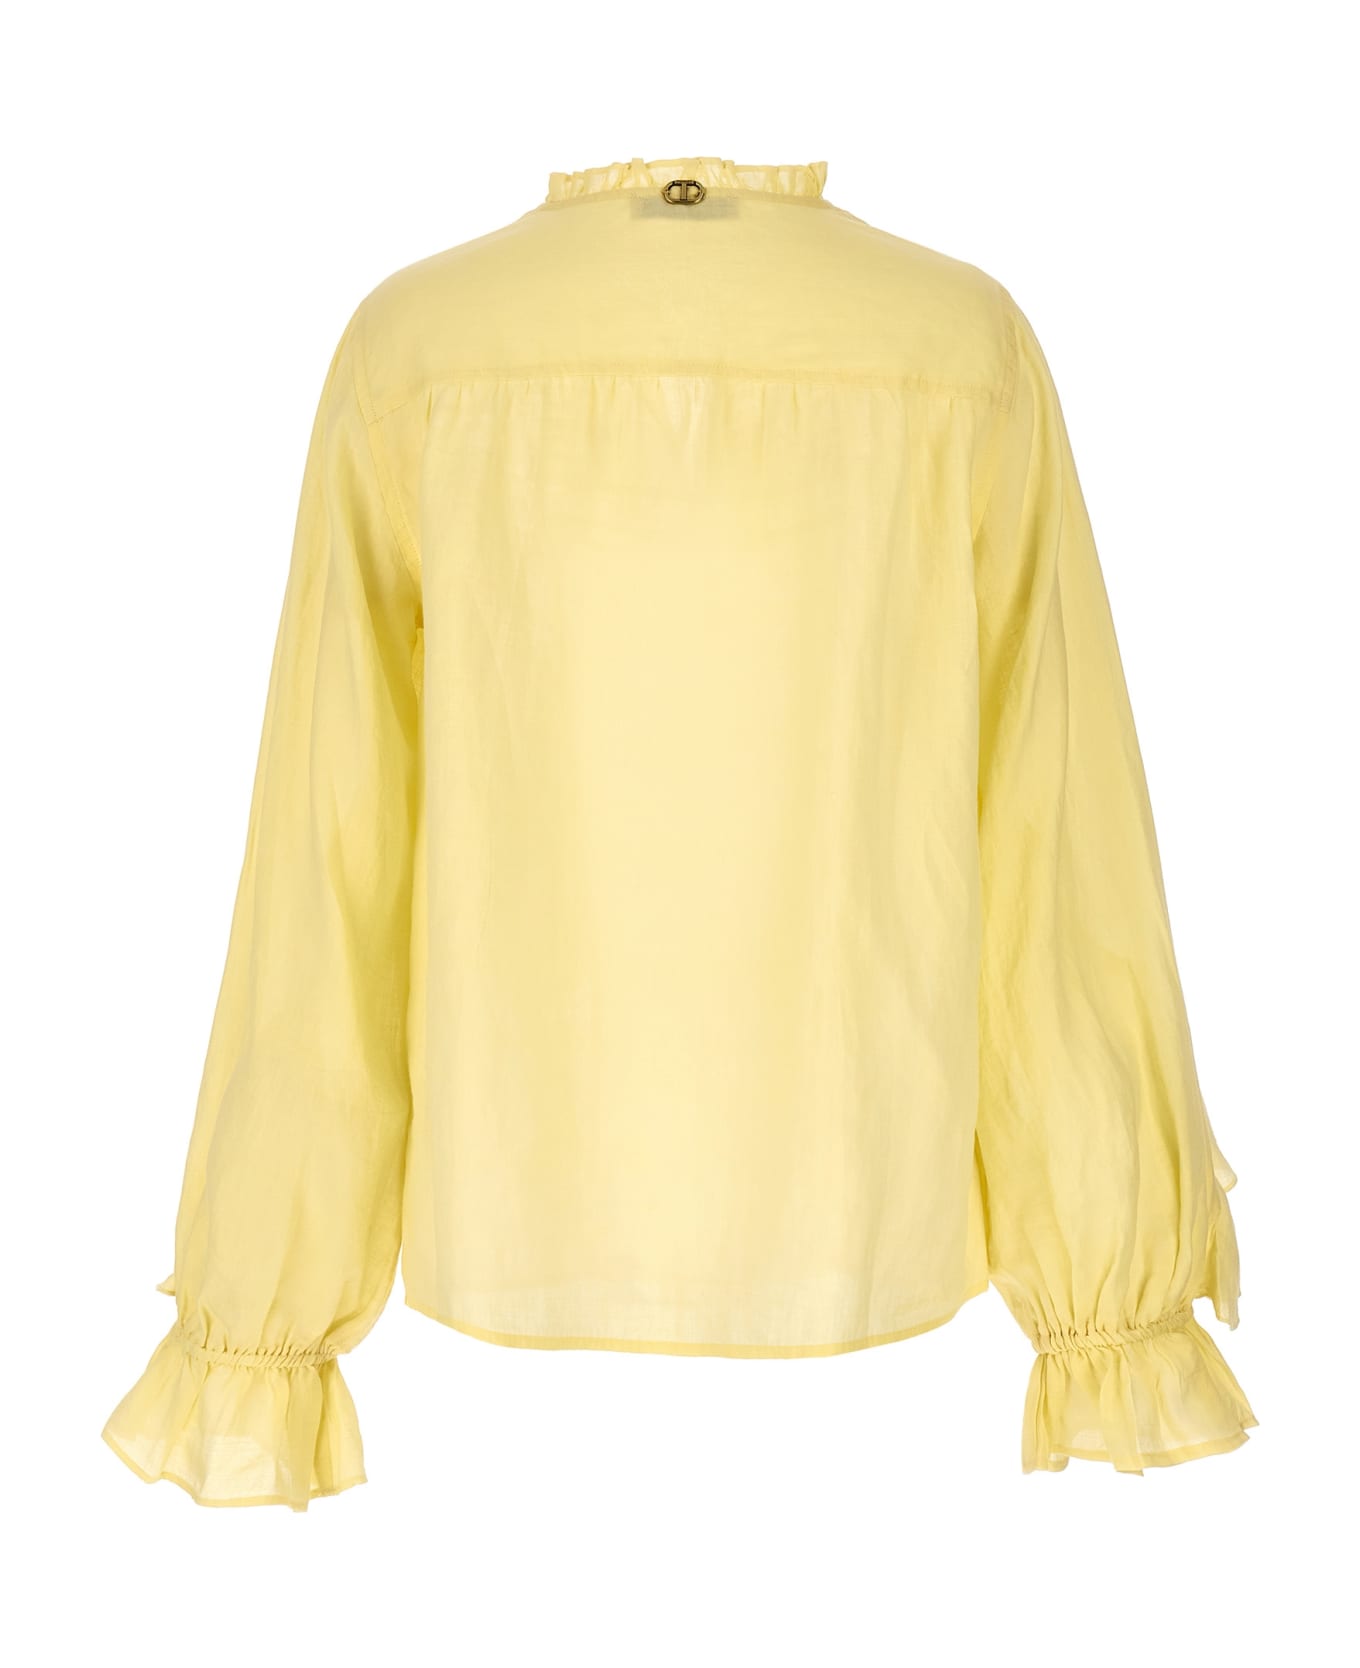 TwinSet Embroidery Ruffle Blouse - Yellow